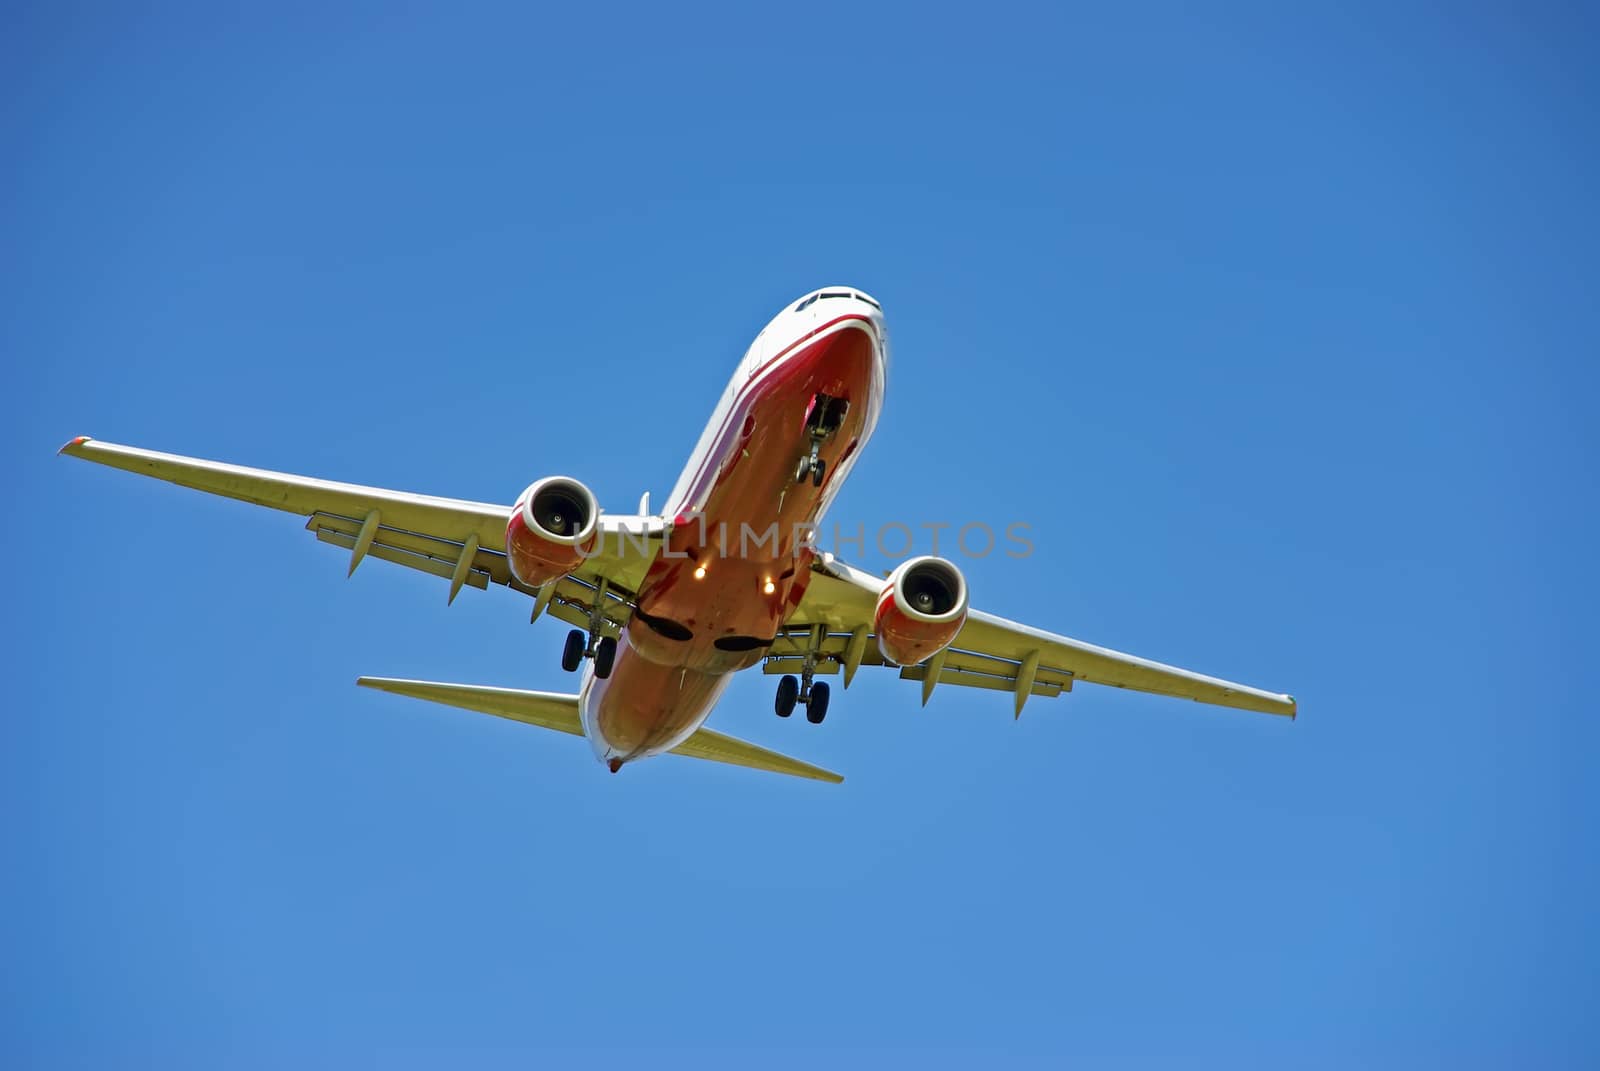 Passenger Plane Landing by JCVSTOCK